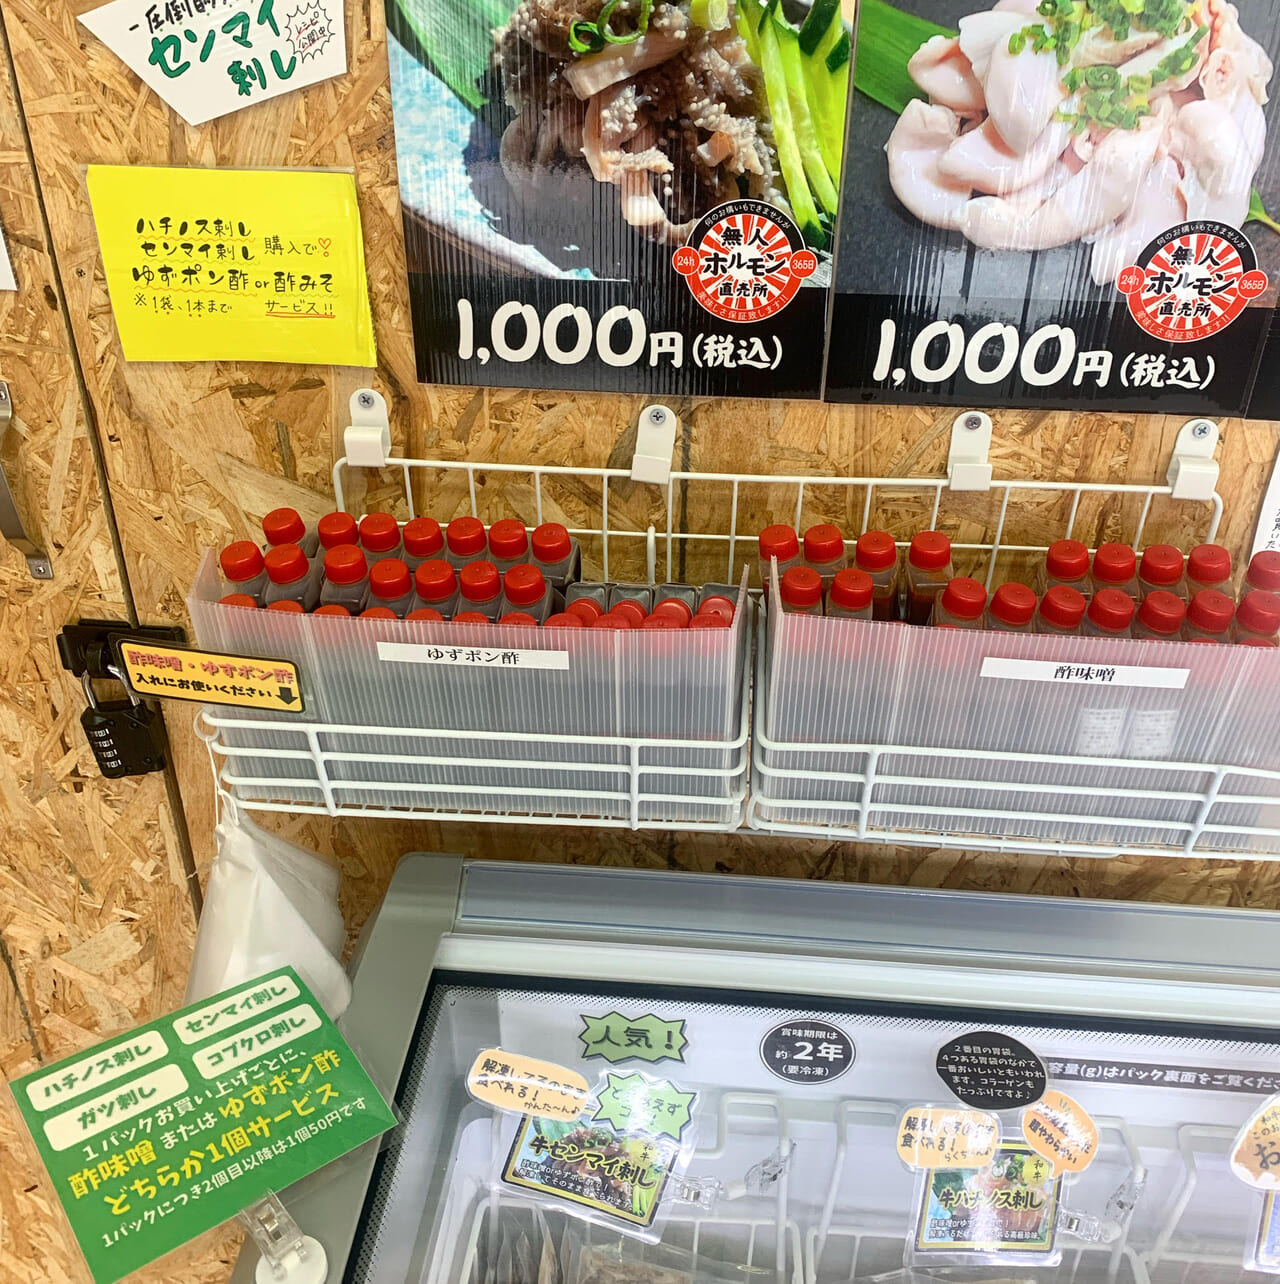 常磐町の「無人ホルモン直売所」は24時間色々な種類のお肉が購入できるお店です!!